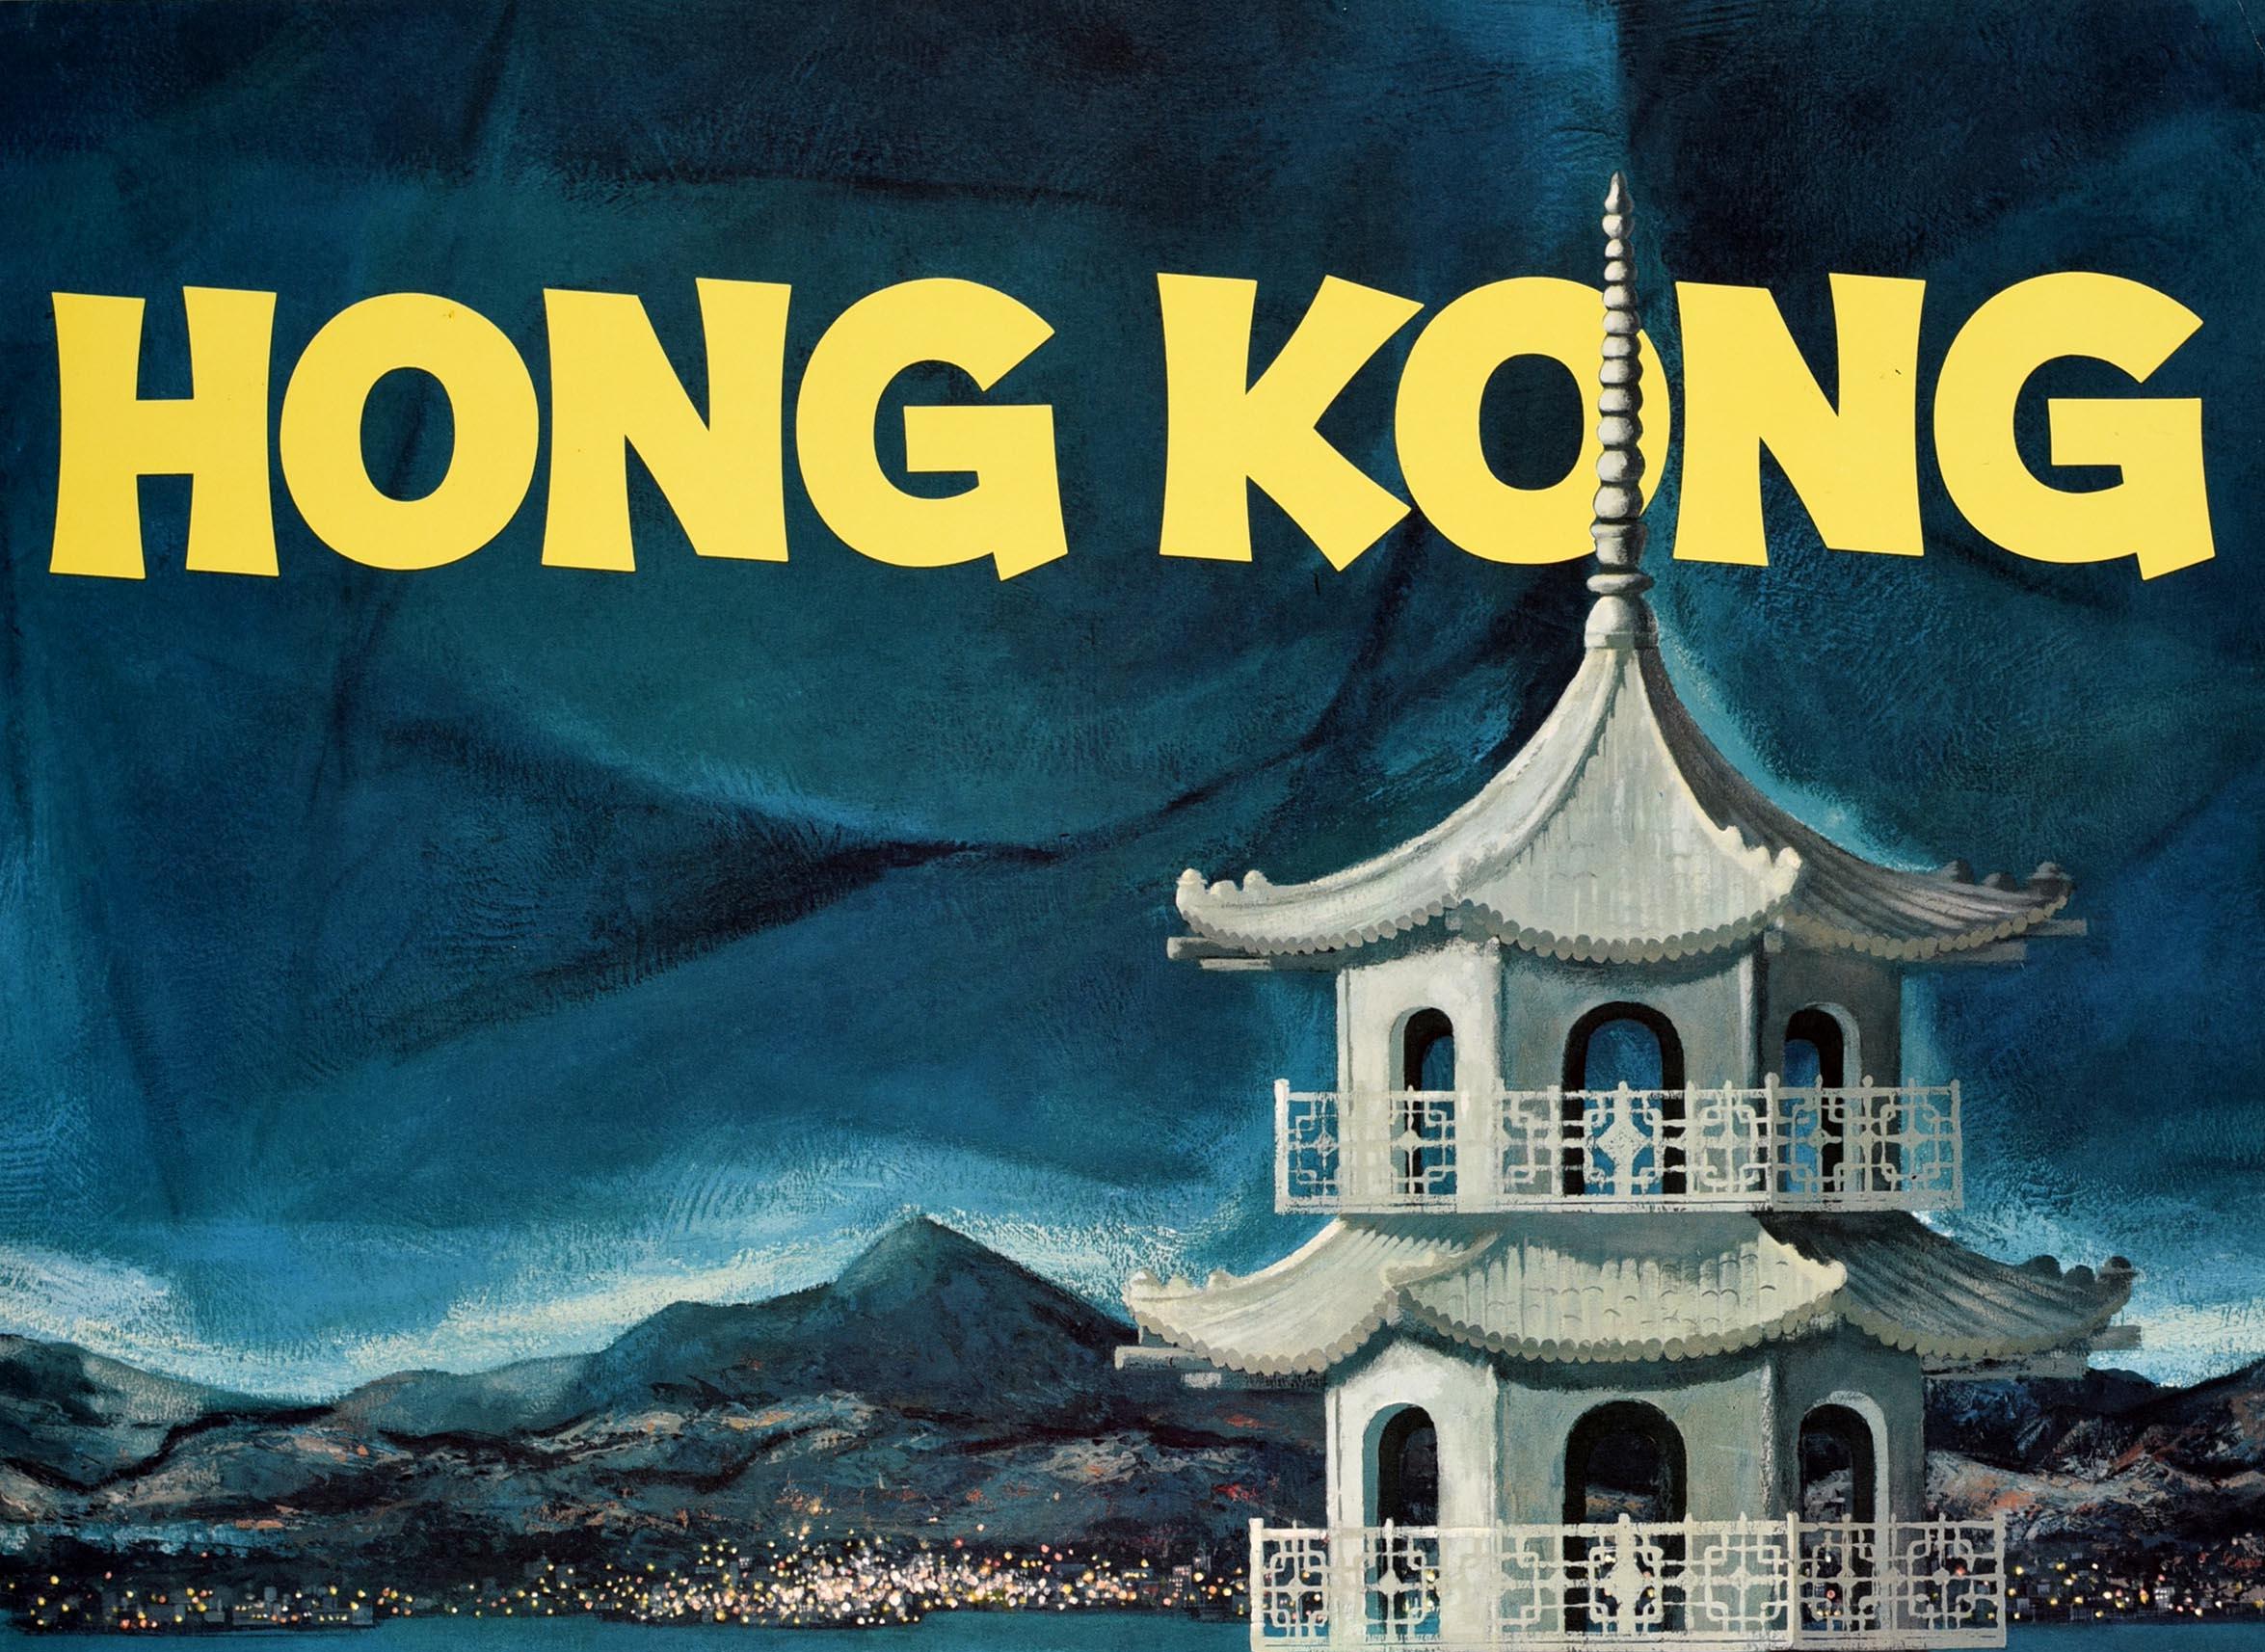 Affiche de voyage originale pour Hong Kong émise par American President Lines desservant 50 ports sur 4 routes commerciales majeures. Œuvre d'art scénique représentant une vue du port de Hong Kong avec un navire de croisière naviguant à côté de